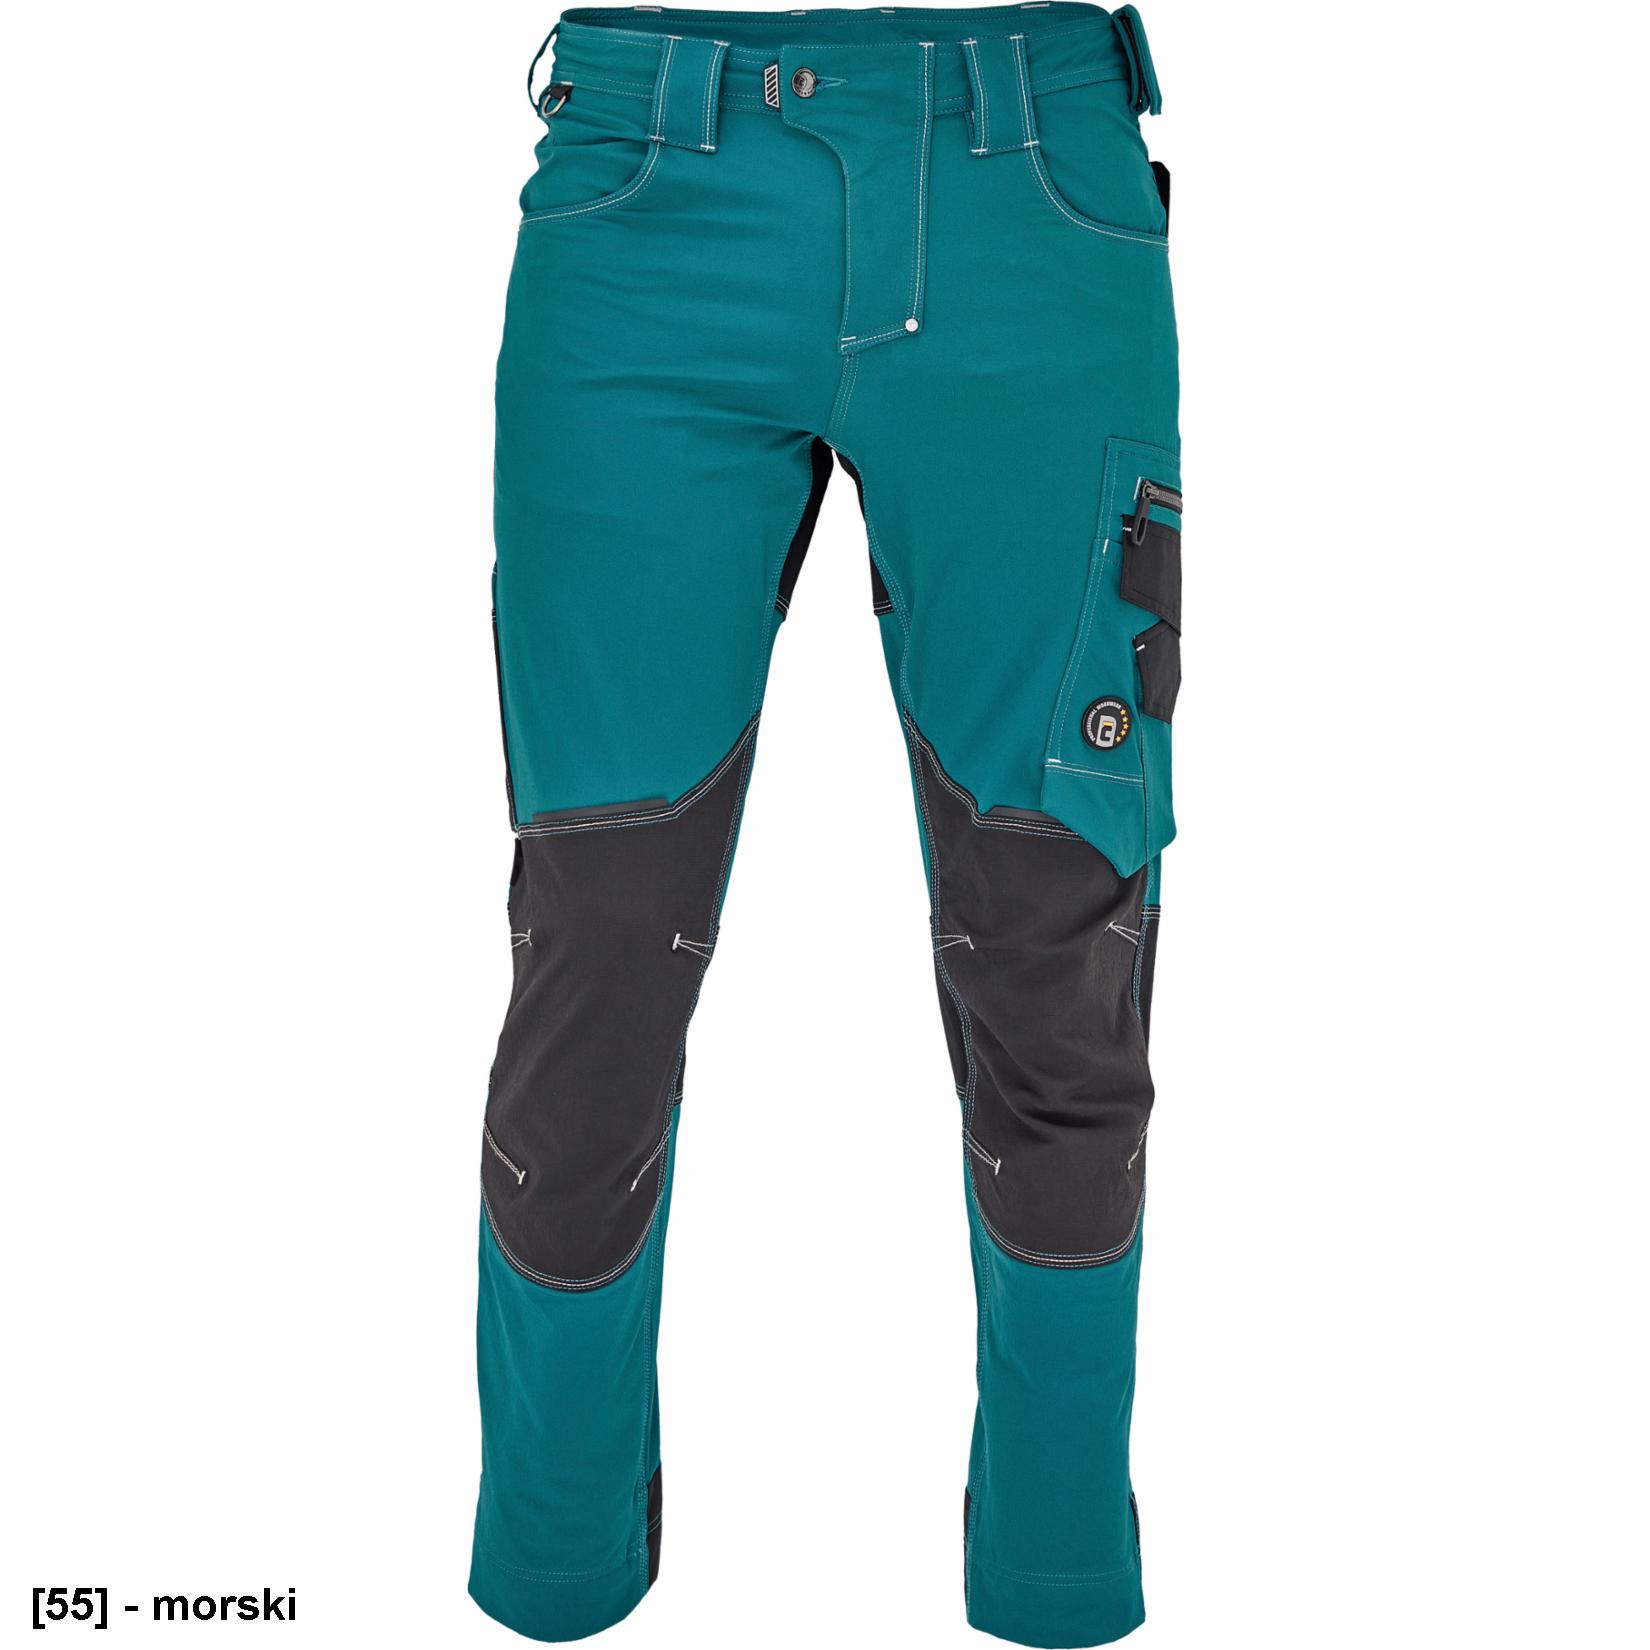 NEURUM PERFORMANCE spodnie - męskie spodnie robocze, elastyczny materiał TrifibetexPRO®, 6 kieszeni, odblaski - 4 kolory - 46-64.